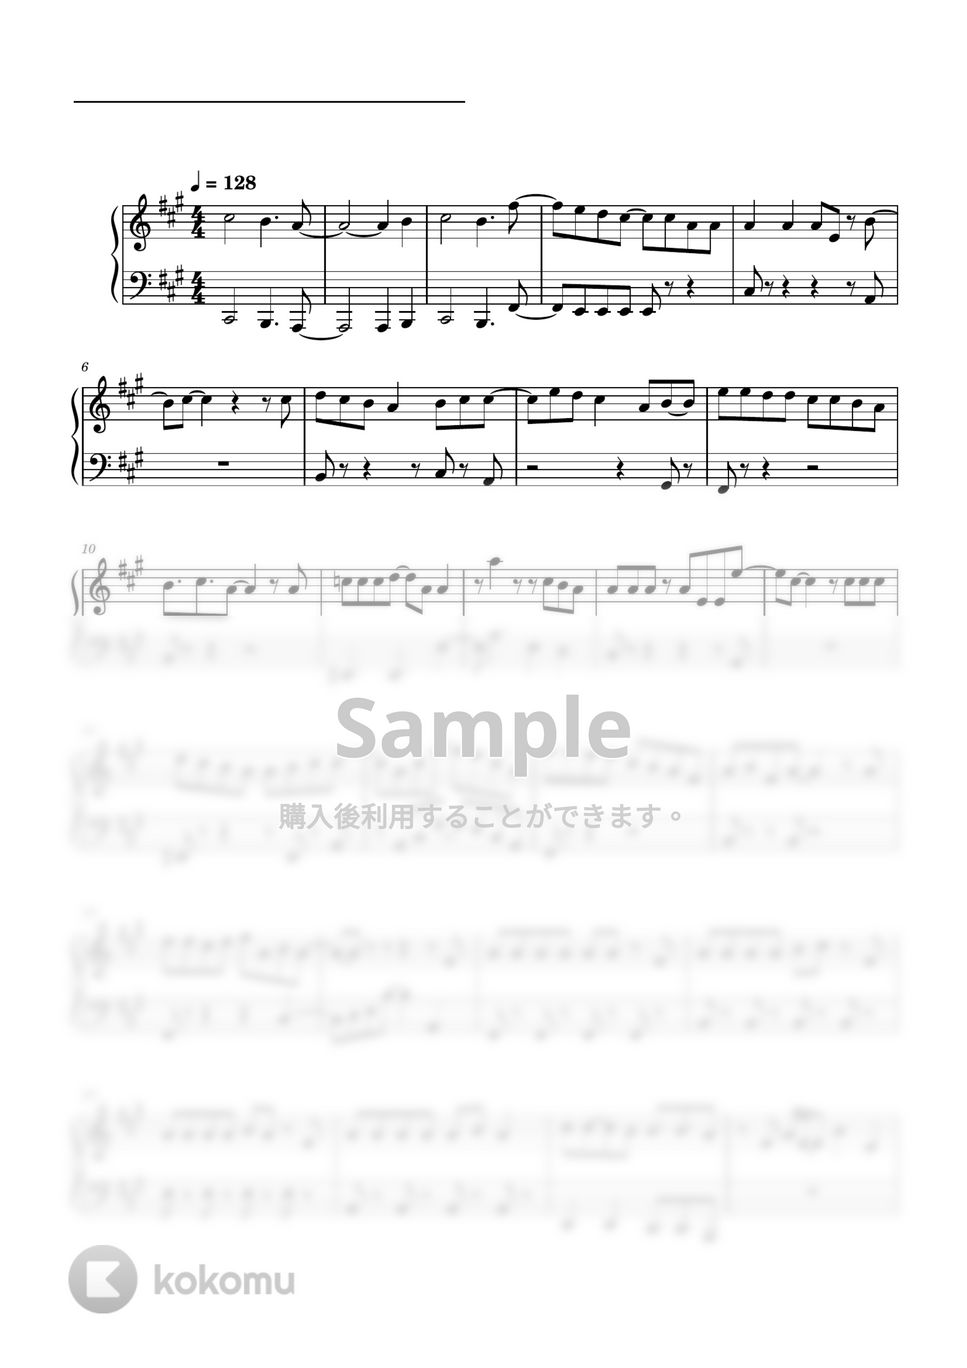 すとぷり - ステレオパレード (ピアノソロ譜) by 萌や氏